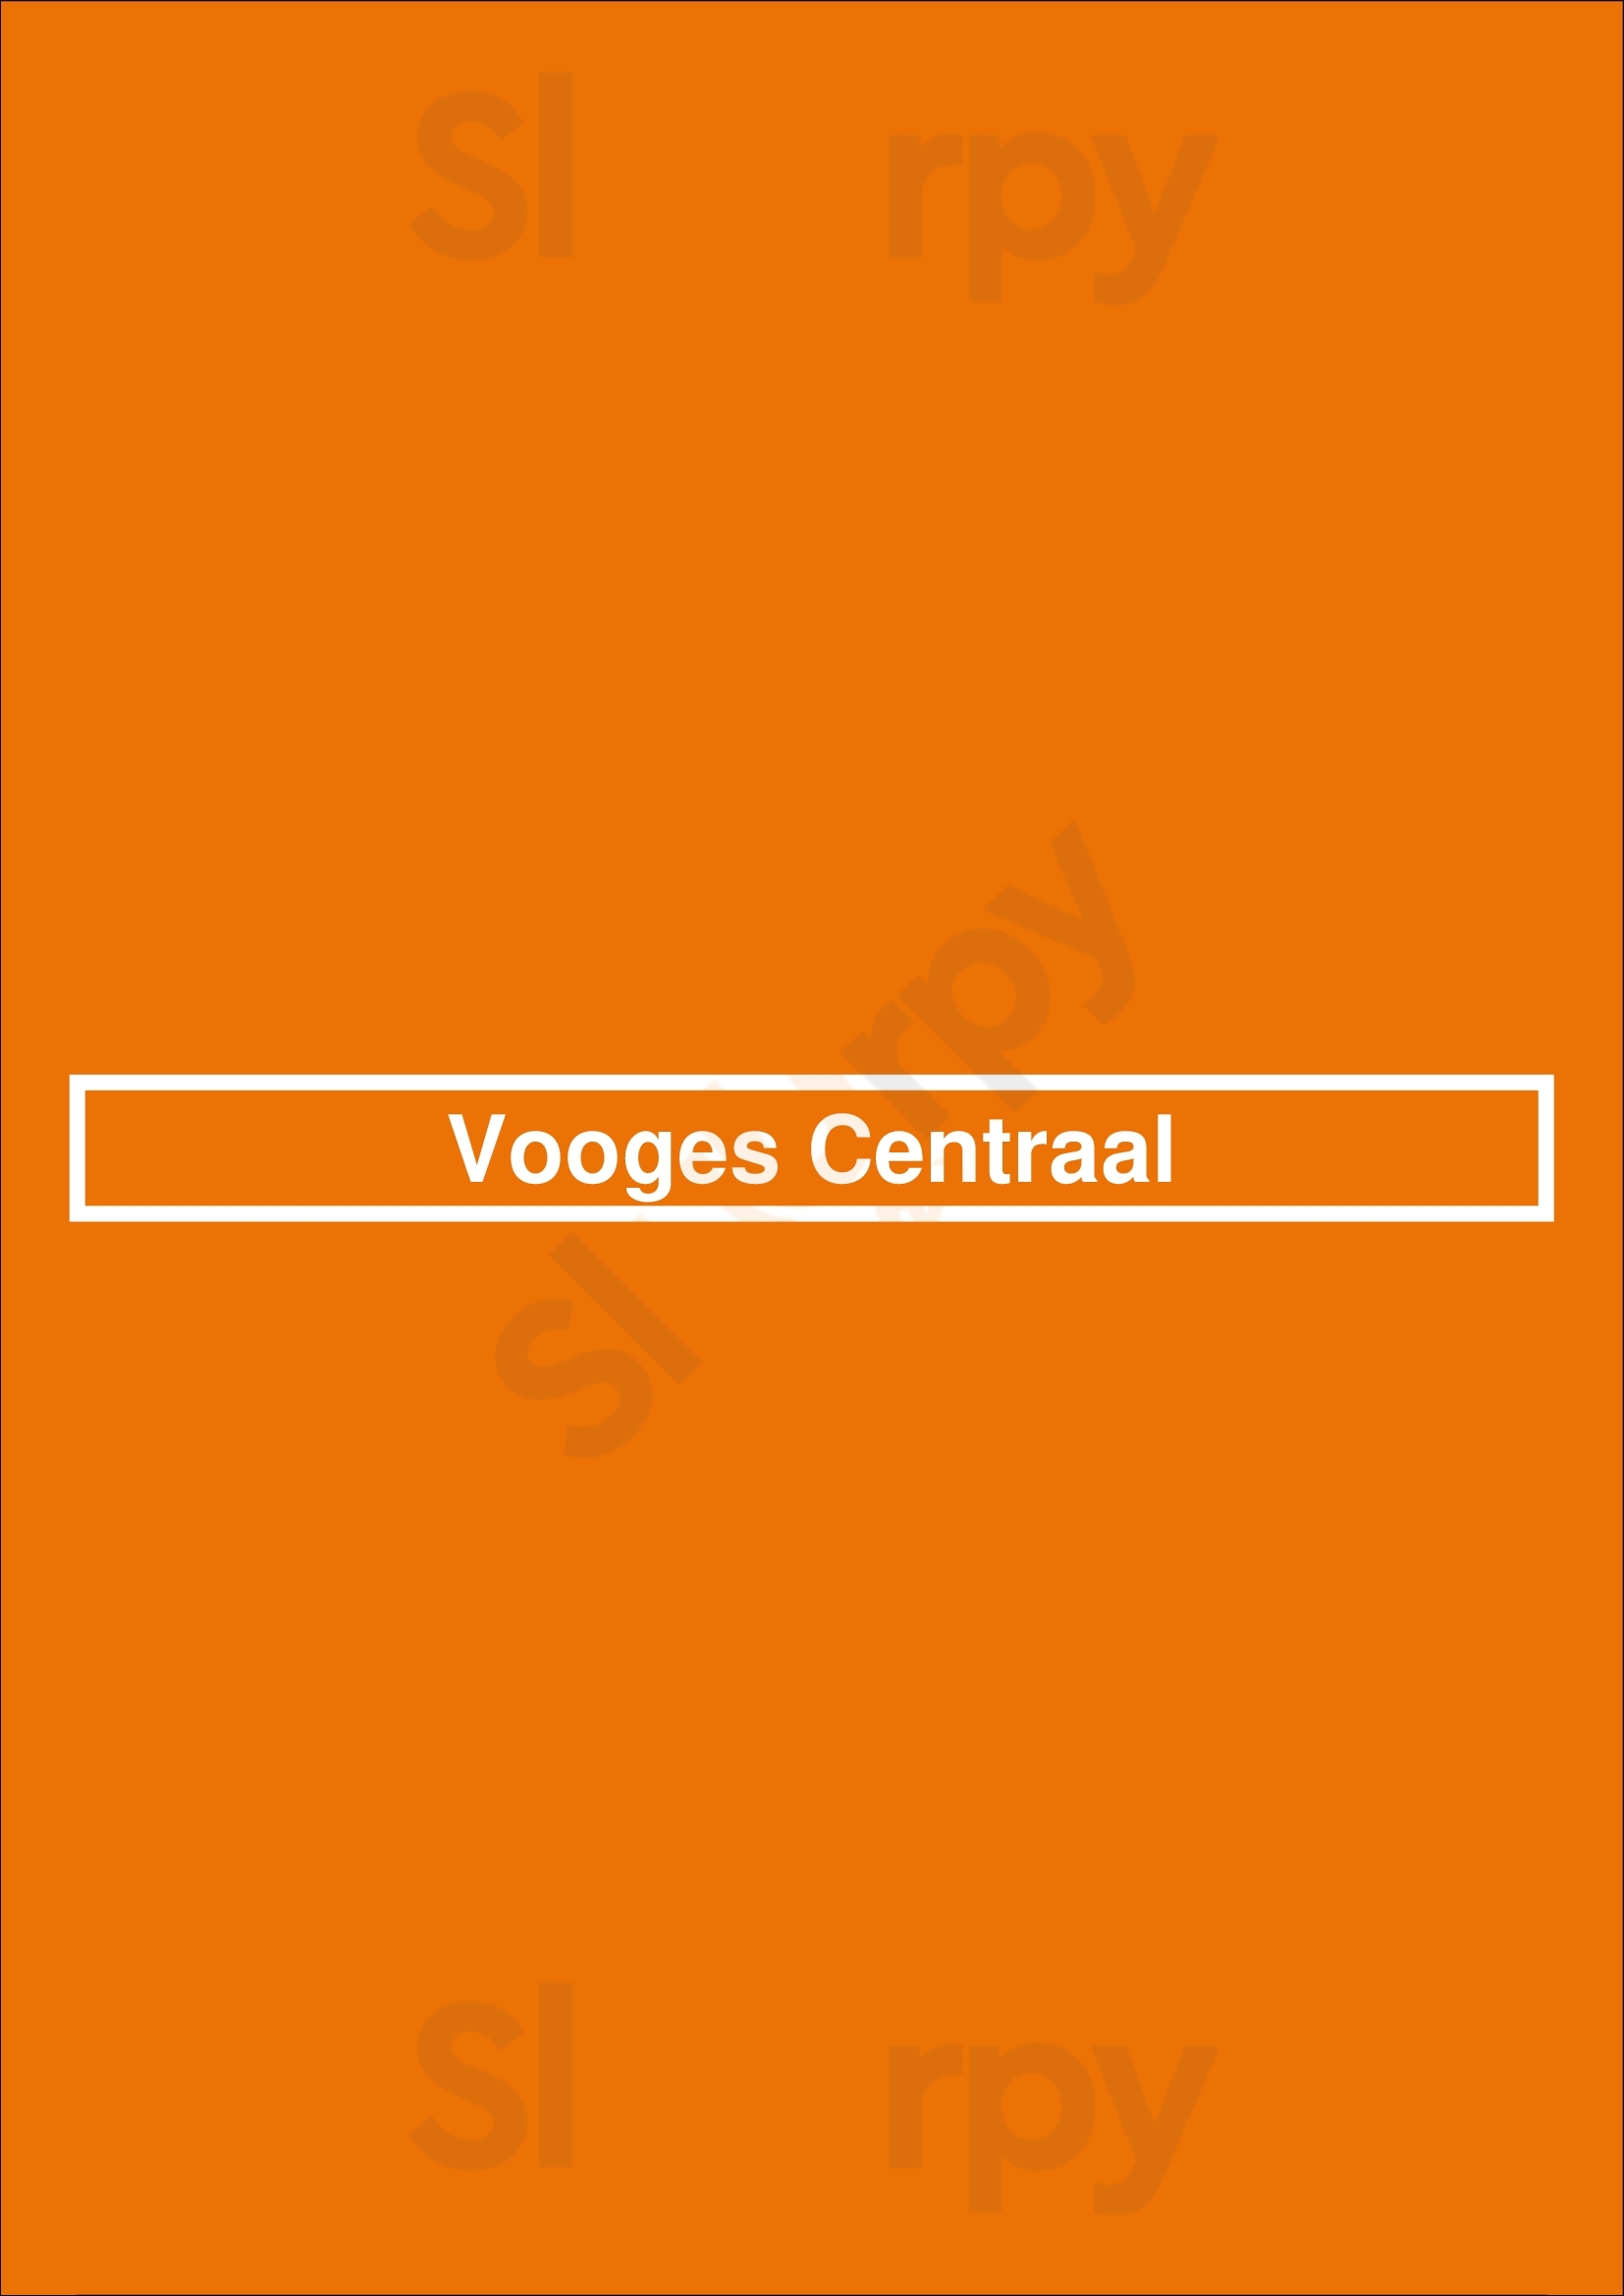 Vooges Centraal Haarlem Menu - 1